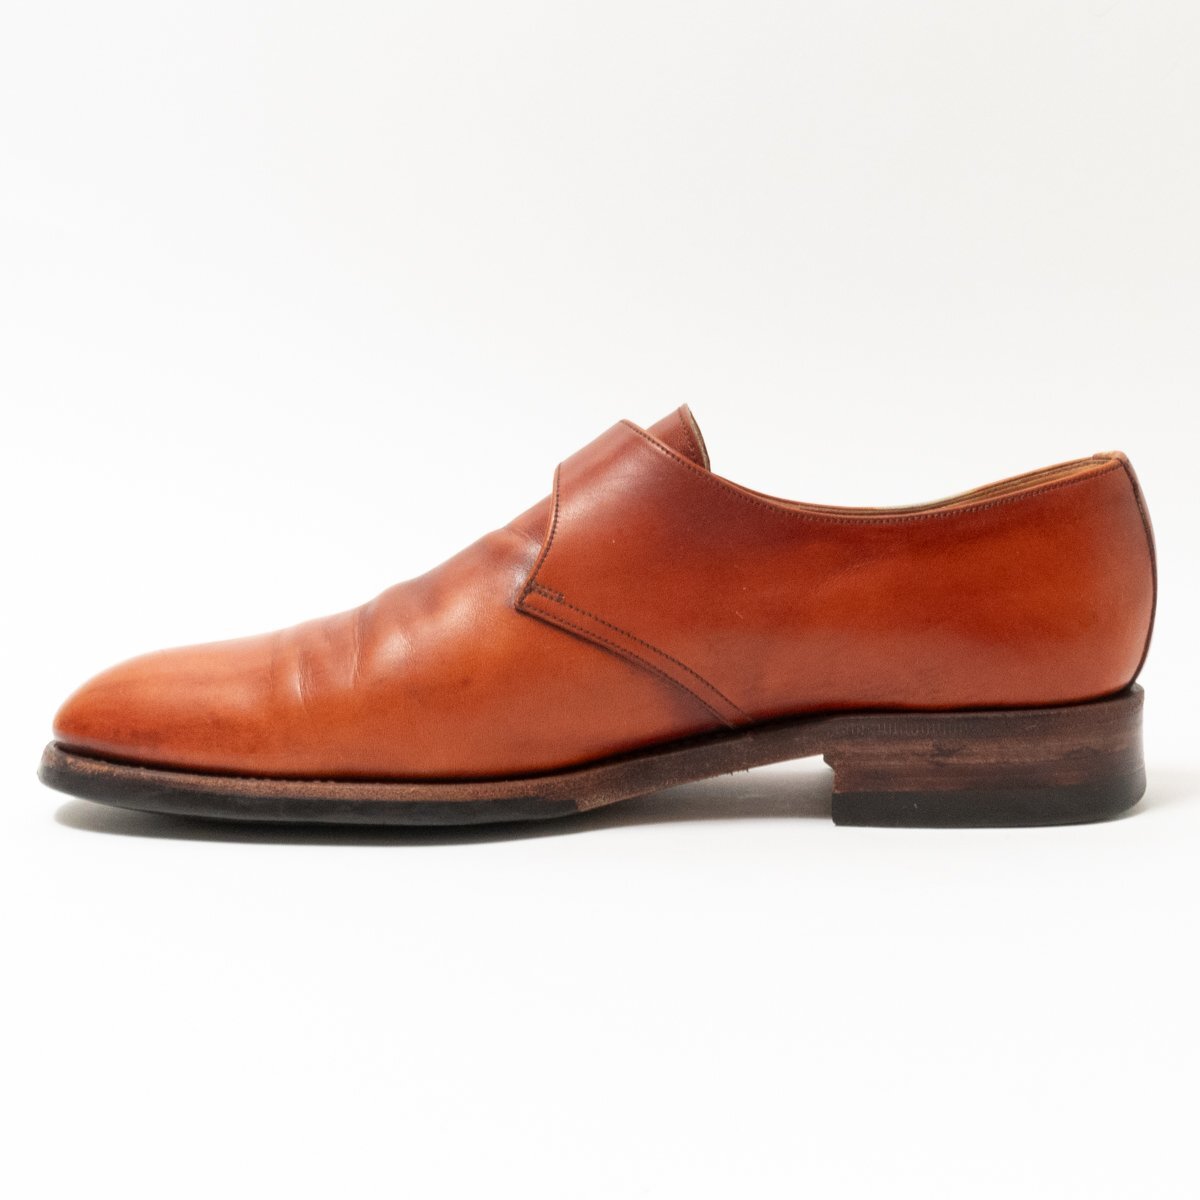 [1 иен старт ]YANKOyanko одиночный monk туфли с ремешками кожа обувь джентльмен обувь мужской 6.5 25cm соответствует Brown кожа натуральная кожа бизнес 